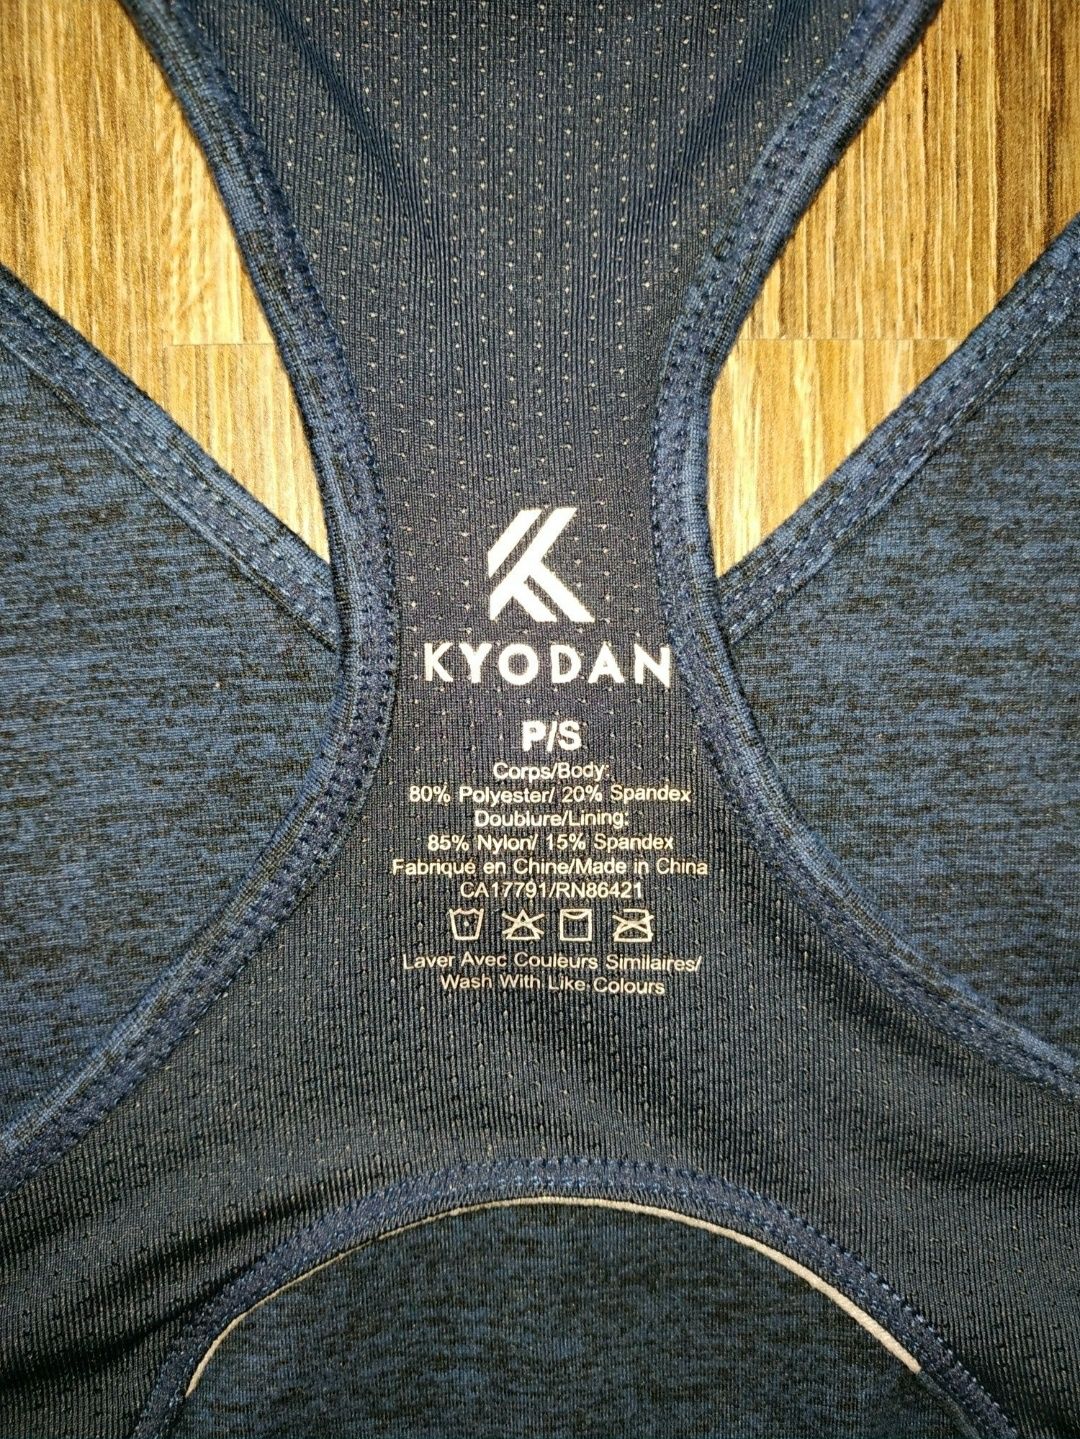 Топ компресійний, спортивний жіночий Adidas, Kyodan